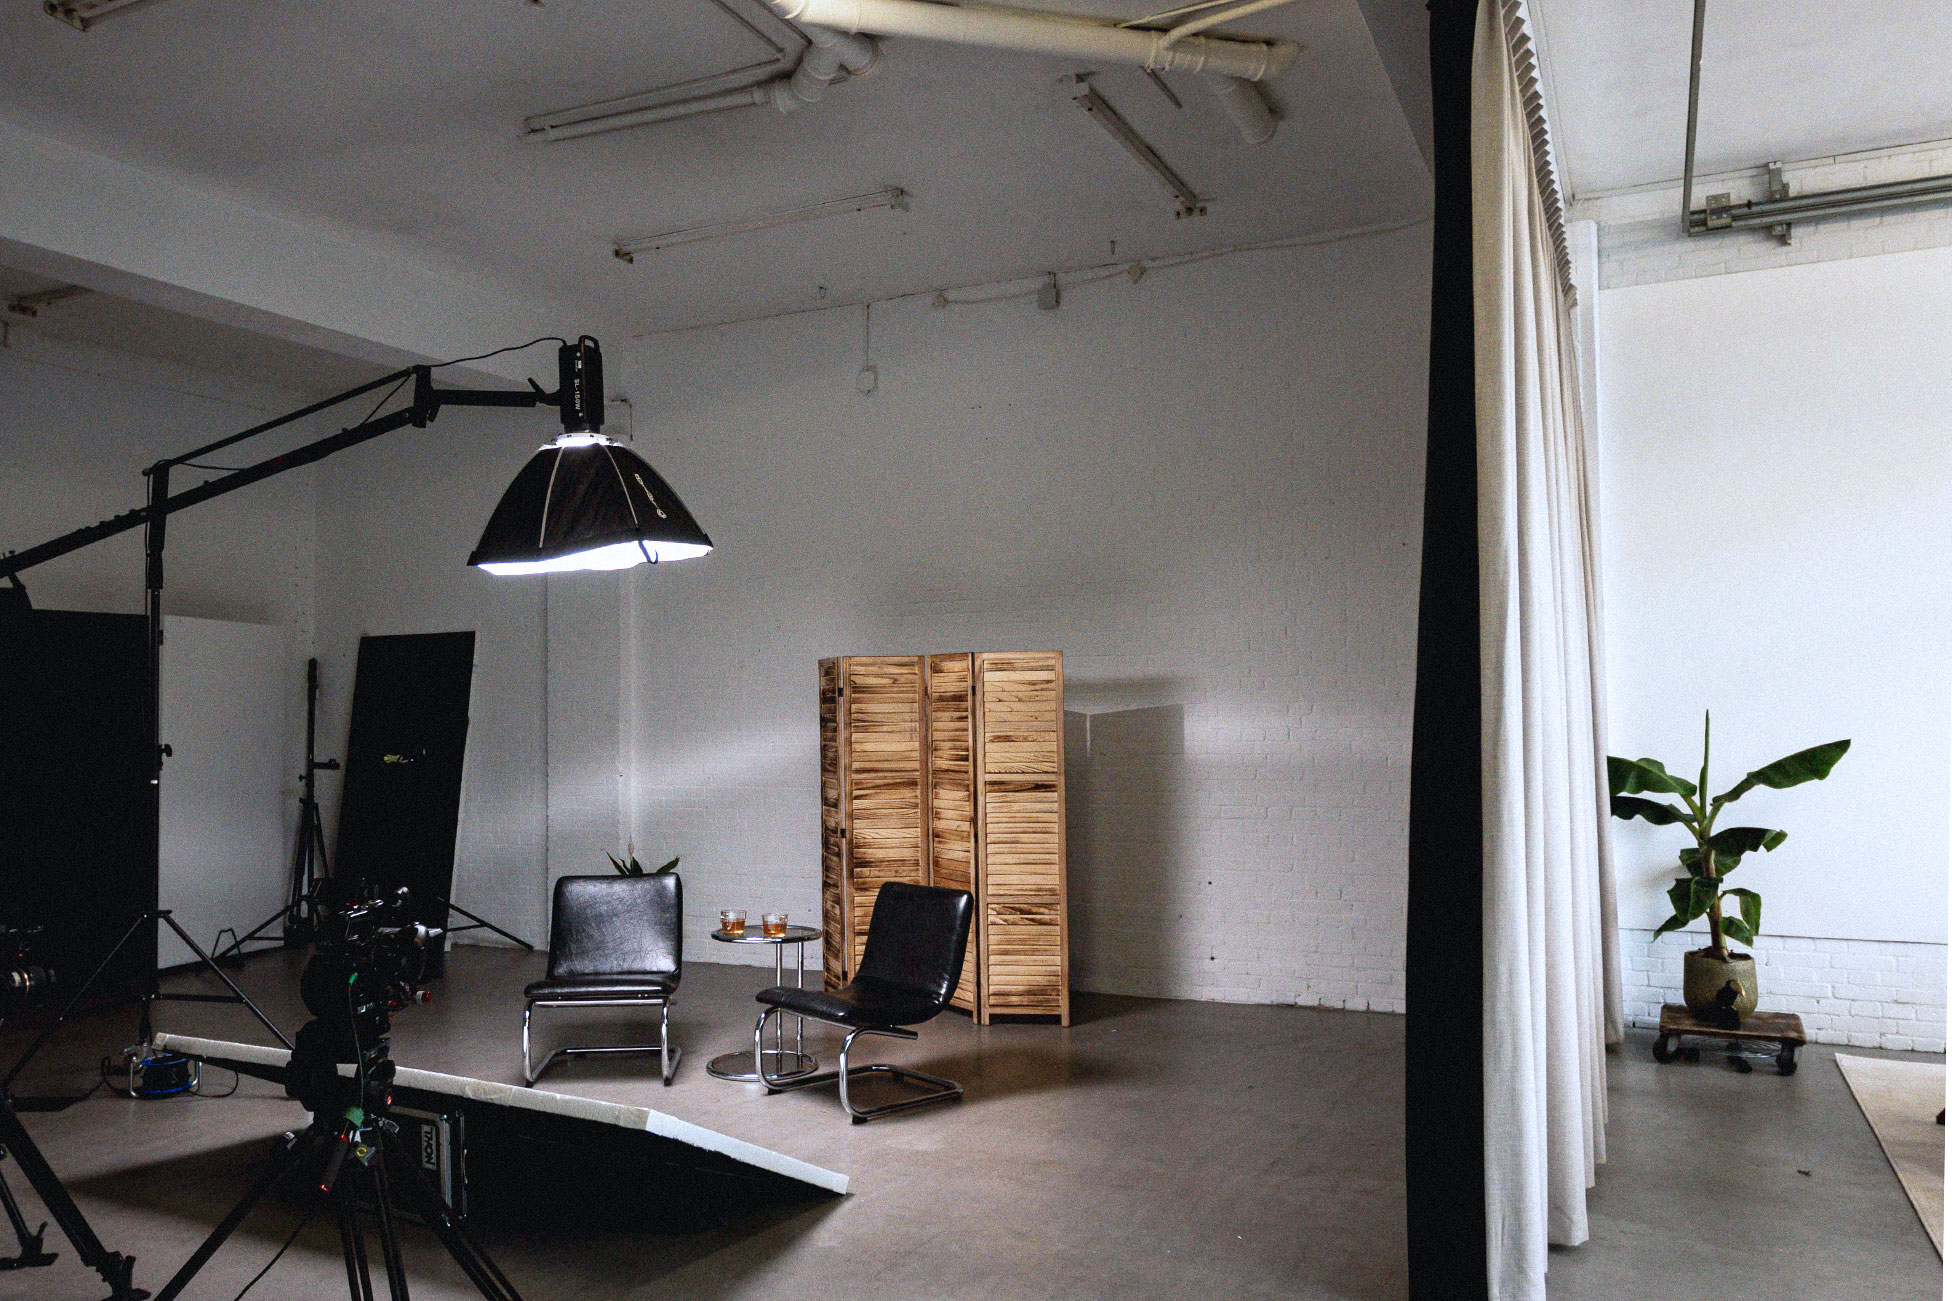 Fotostudio Amsterdam. Onze stijlvolle interieur kunnen je op weg helpen met je fotoshoot. Ook zijn er studiolampen en backdrop aanwezig.